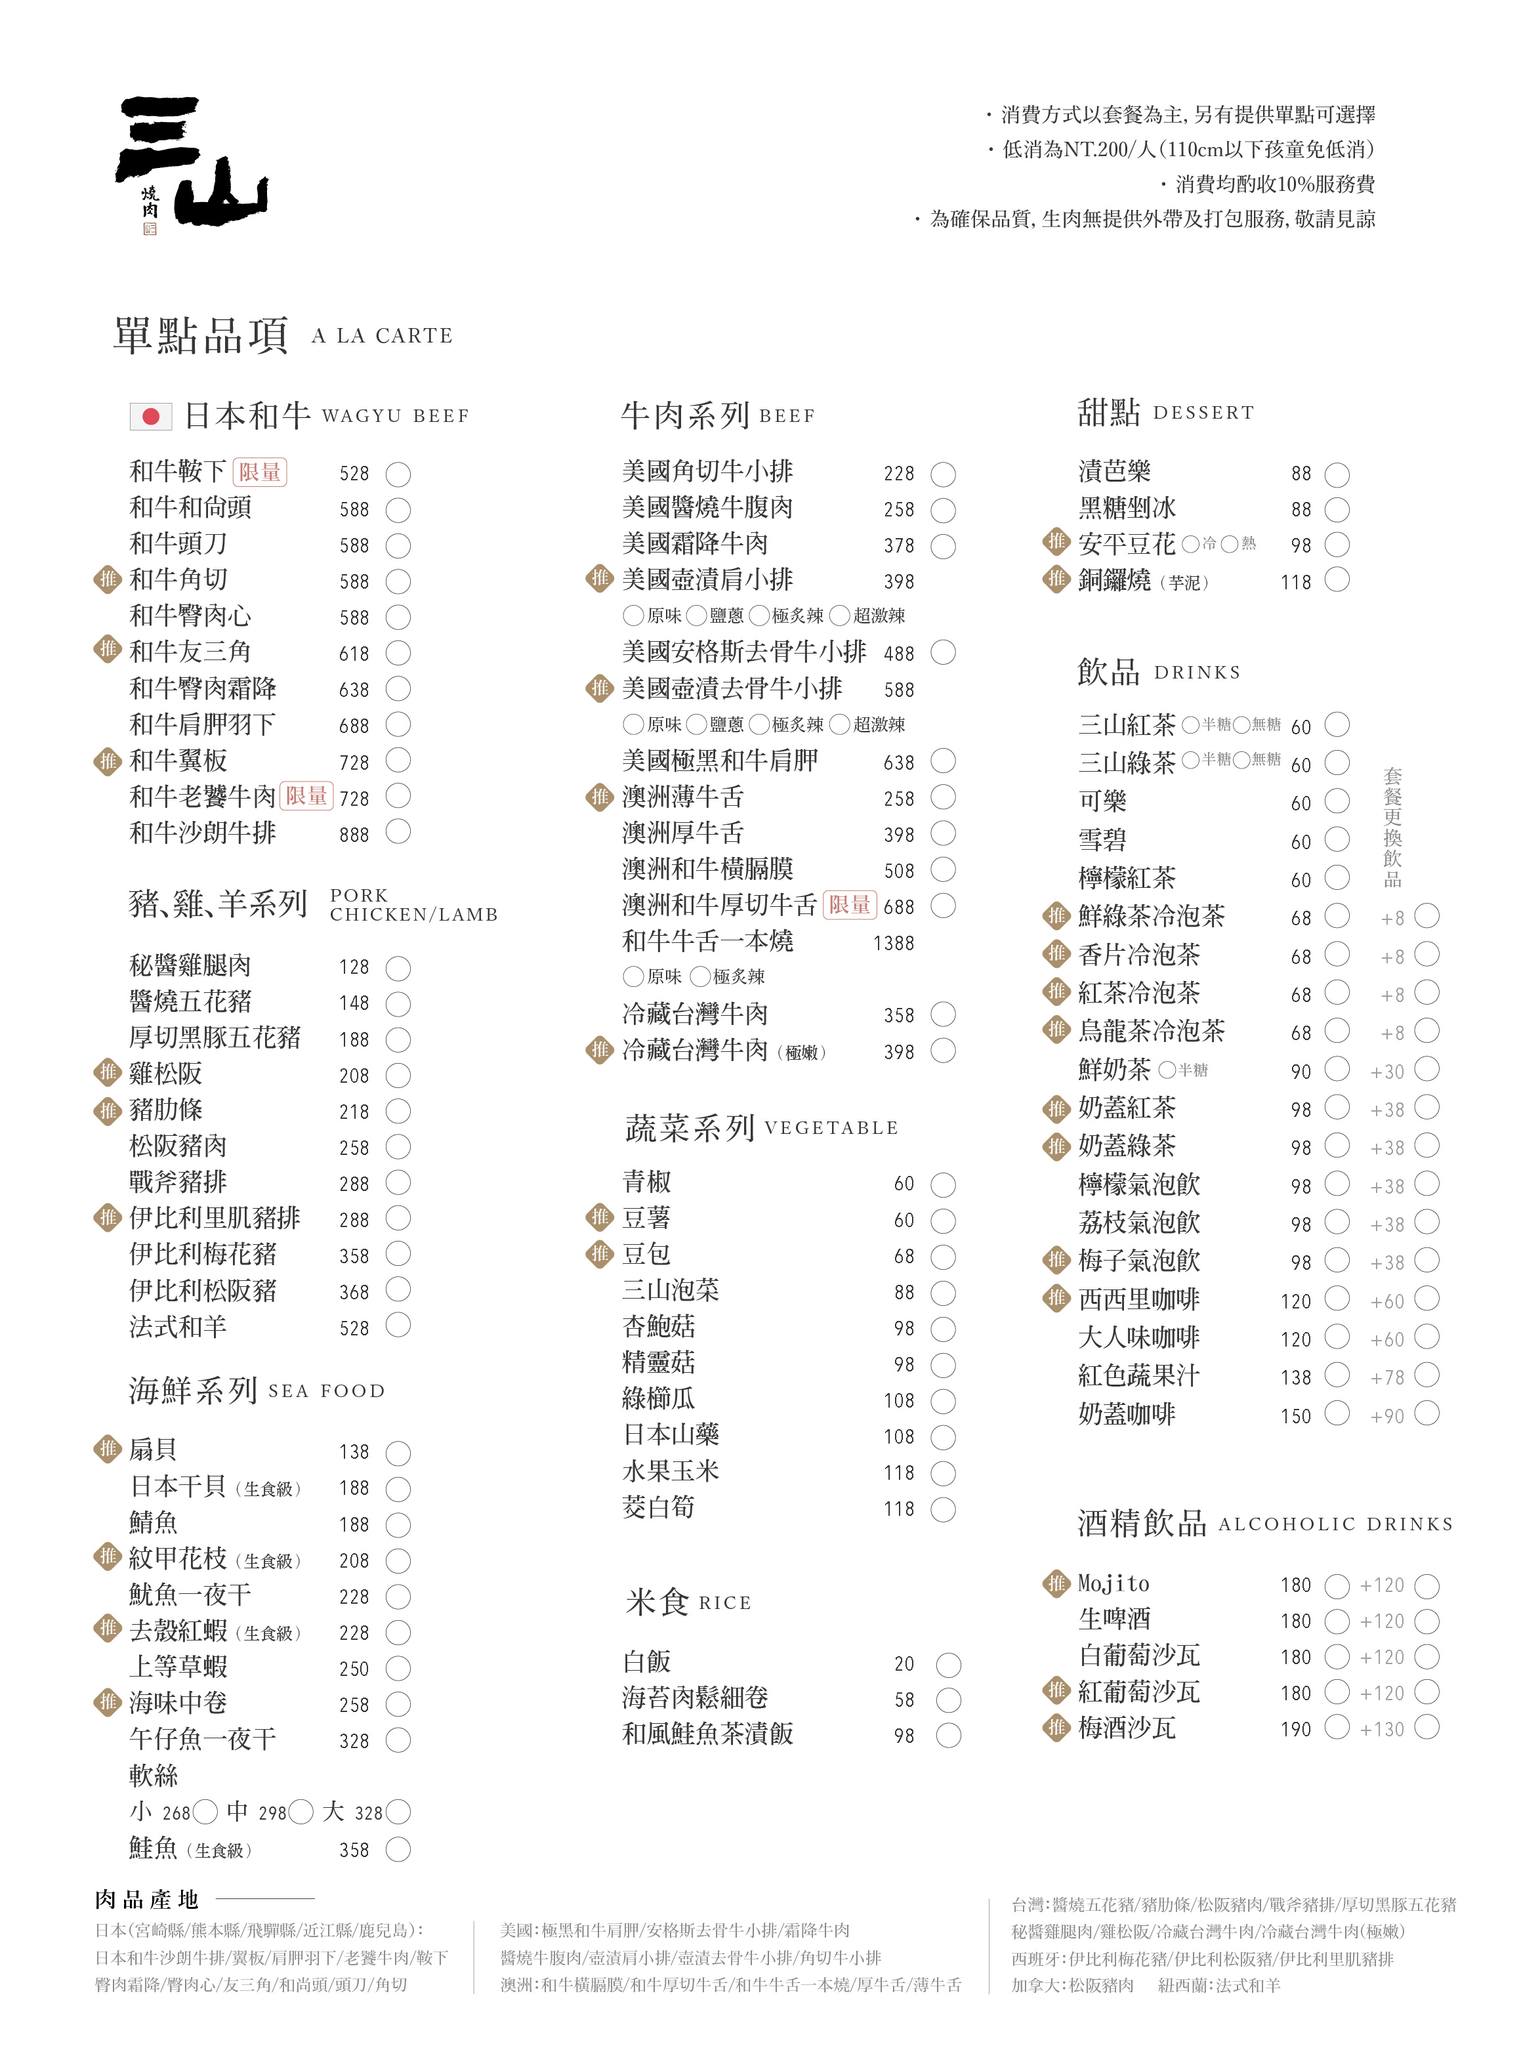 輕井澤燒肉「三山燒肉」菜單一覽表